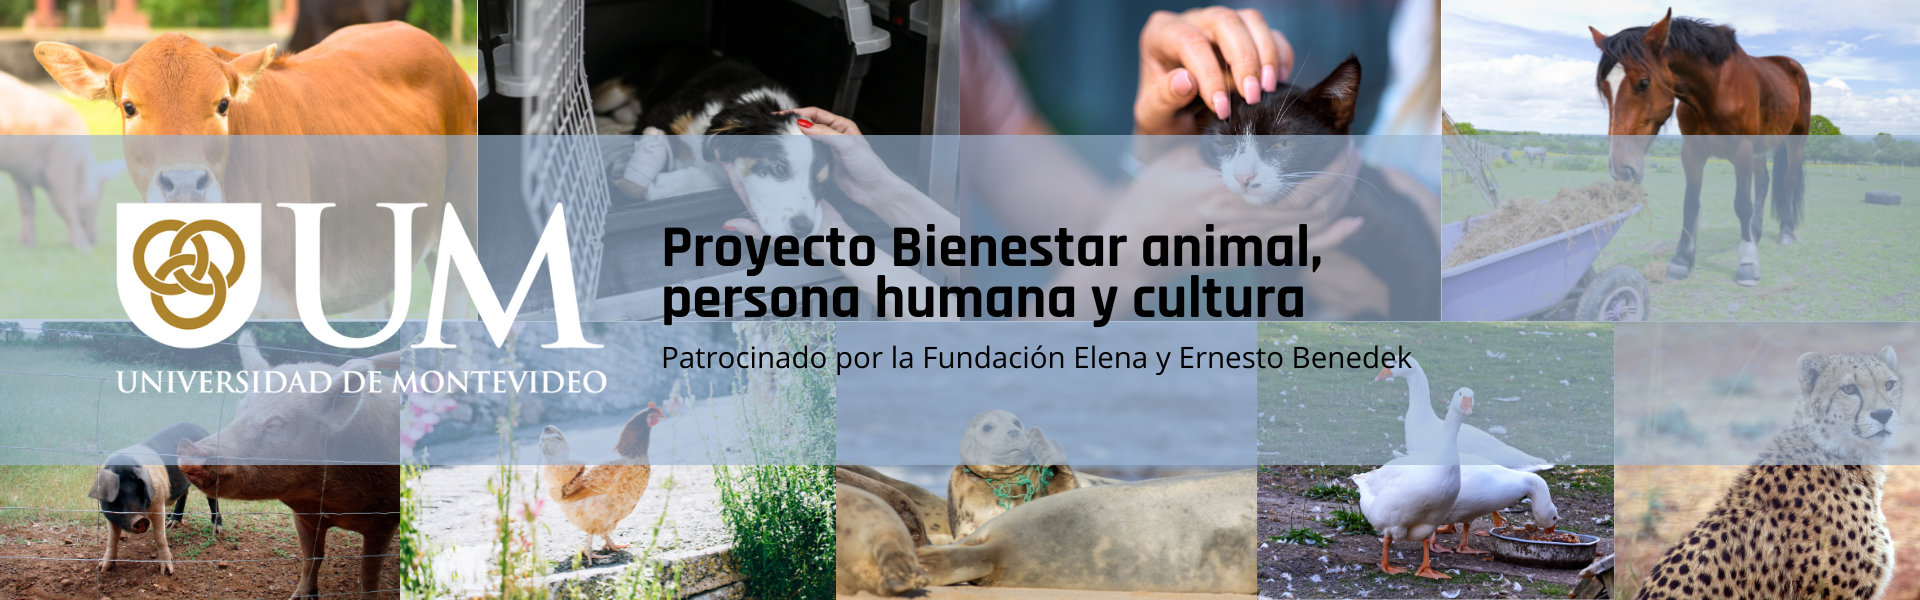 Proyecto bienestar animal, persona humana y cultura, facultad de Humanidades y Educación de la UM